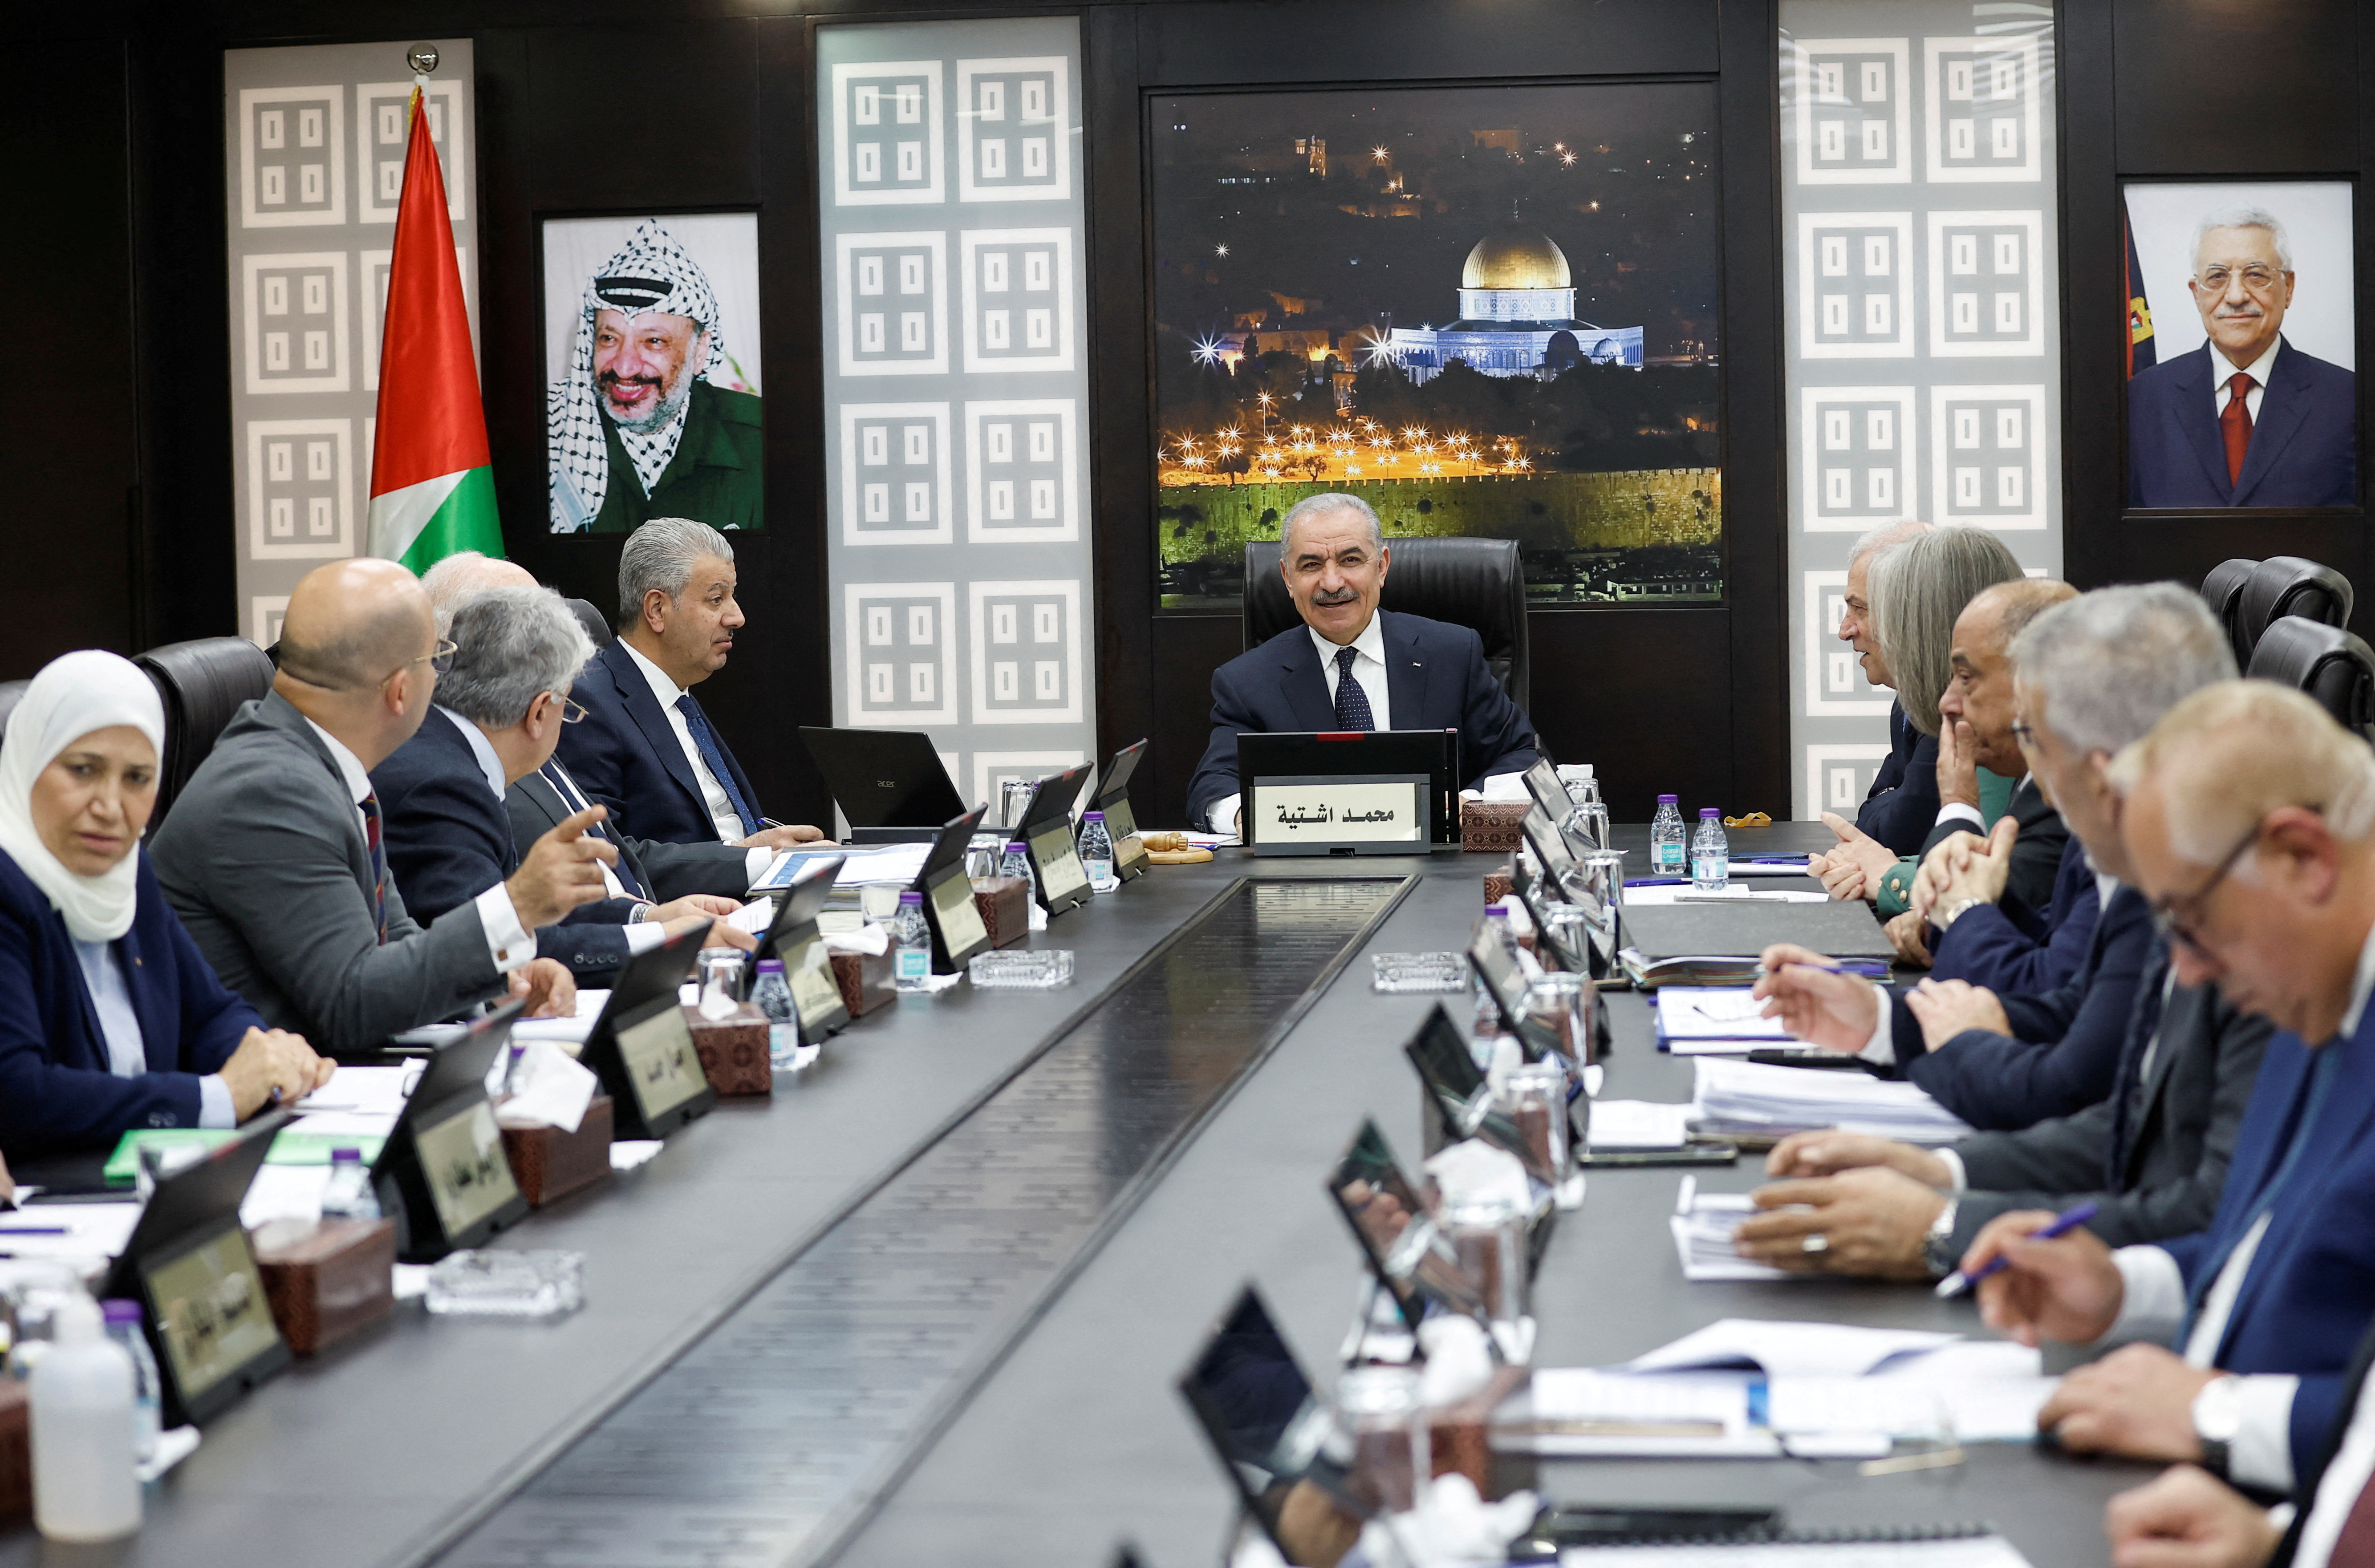 パレスチナ首相が辞意、「ガザの現状踏まえた政治的取り決め必要」 - ロイター (Reuters Japan)